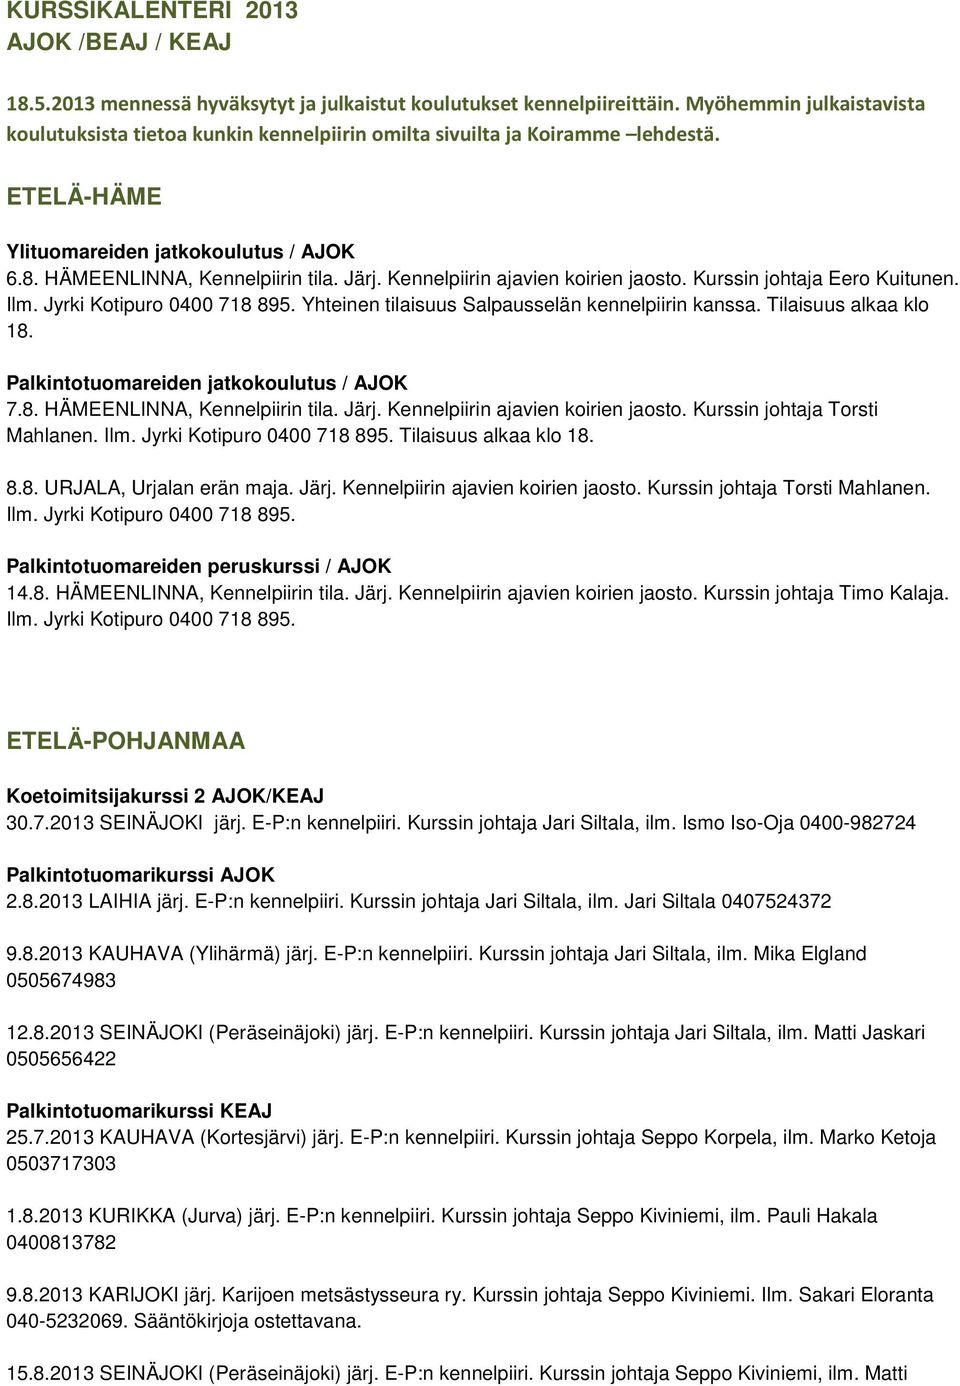 Kennelpiirin ajavien koirien jaosto. Kurssin johtaja Eero Kuitunen. Ilm. Jyrki Kotipuro 0400 718 895. Yhteinen tilaisuus Salpausselän kennelpiirin kanssa. Tilaisuus alkaa klo 18.